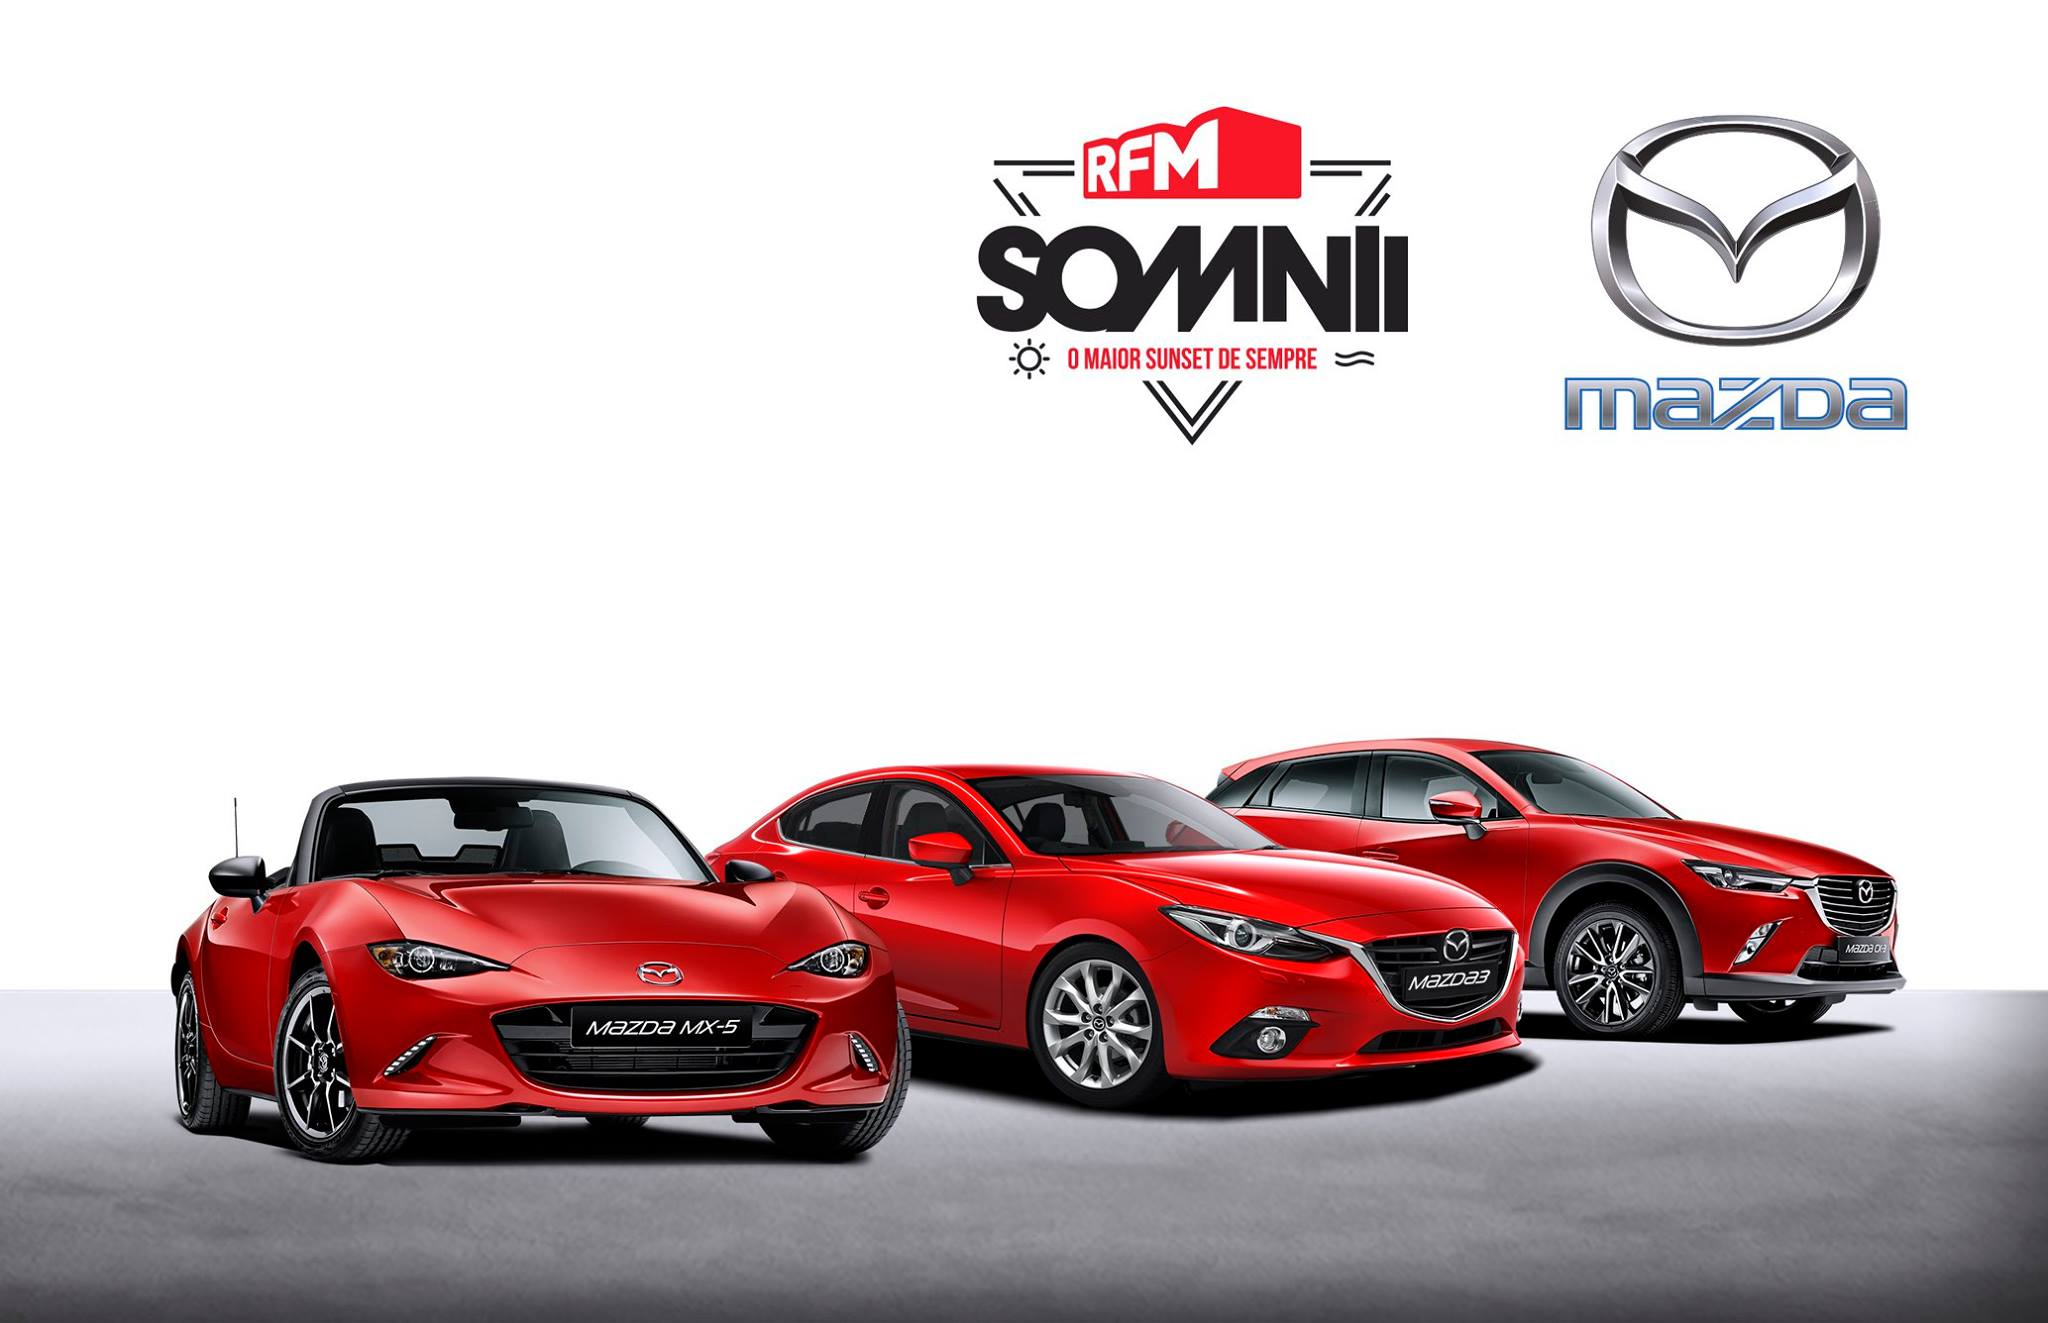 Mazda parceira oficial do RFM SOMNII